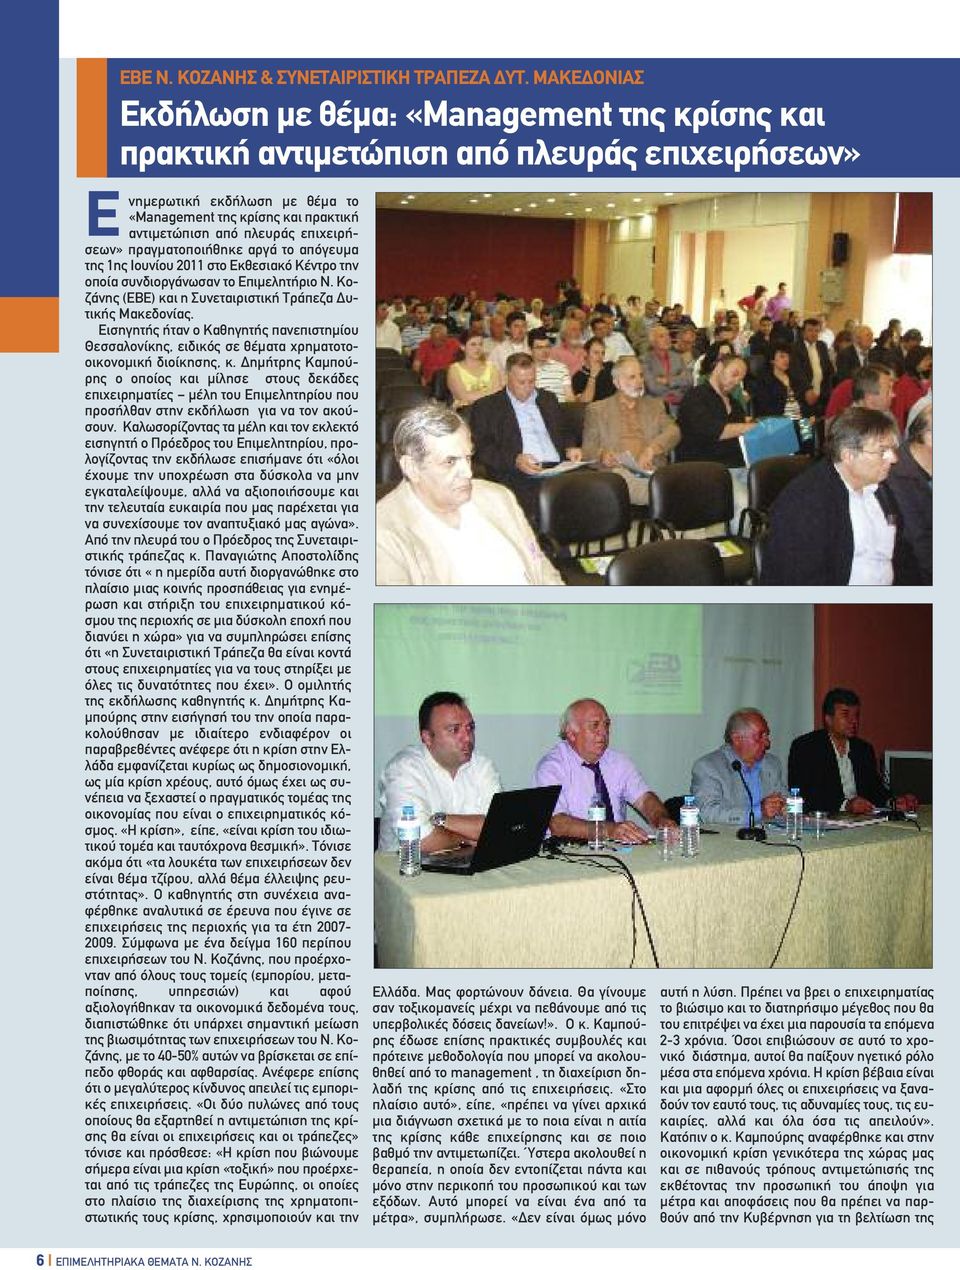 επιχειρήσεων» πραγµατοποιήθηκε αργά το απόγευµα της 1ης Ιουνίου 2011 στο Εκθεσιακό Κέντρο την οποία συνδιοργάνωσαν το Επιµελητήριο Ν. Κοζάνης (ΕΒΕ) και η Συνεταιριστική Τράπεζα υτικής Μακεδονίας.